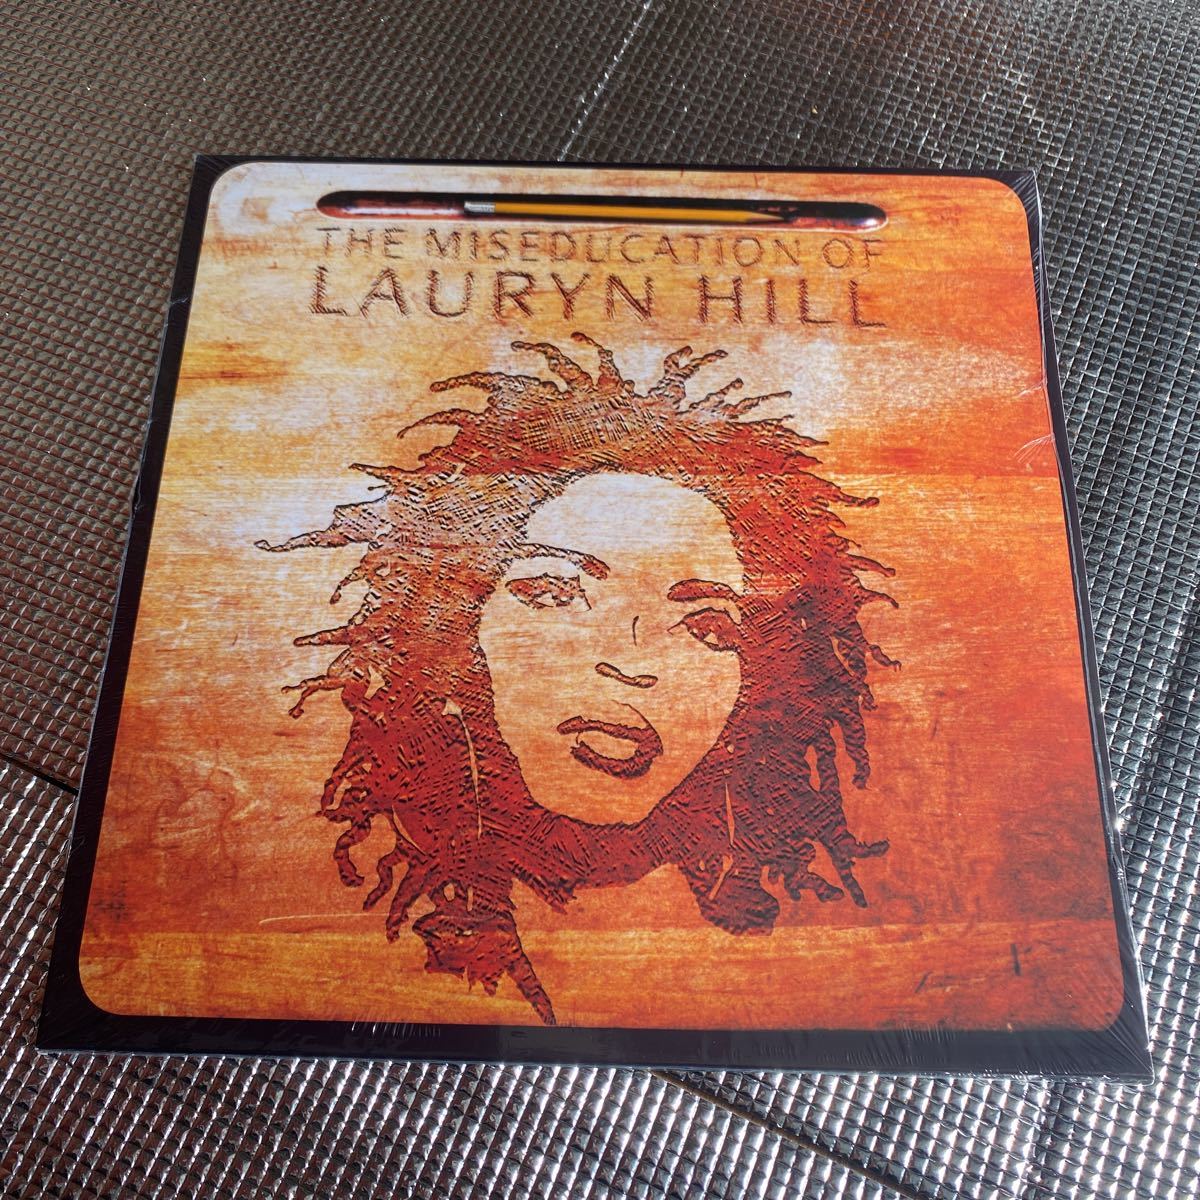 Lauryn Hill ローリンヒル レコード - 洋楽